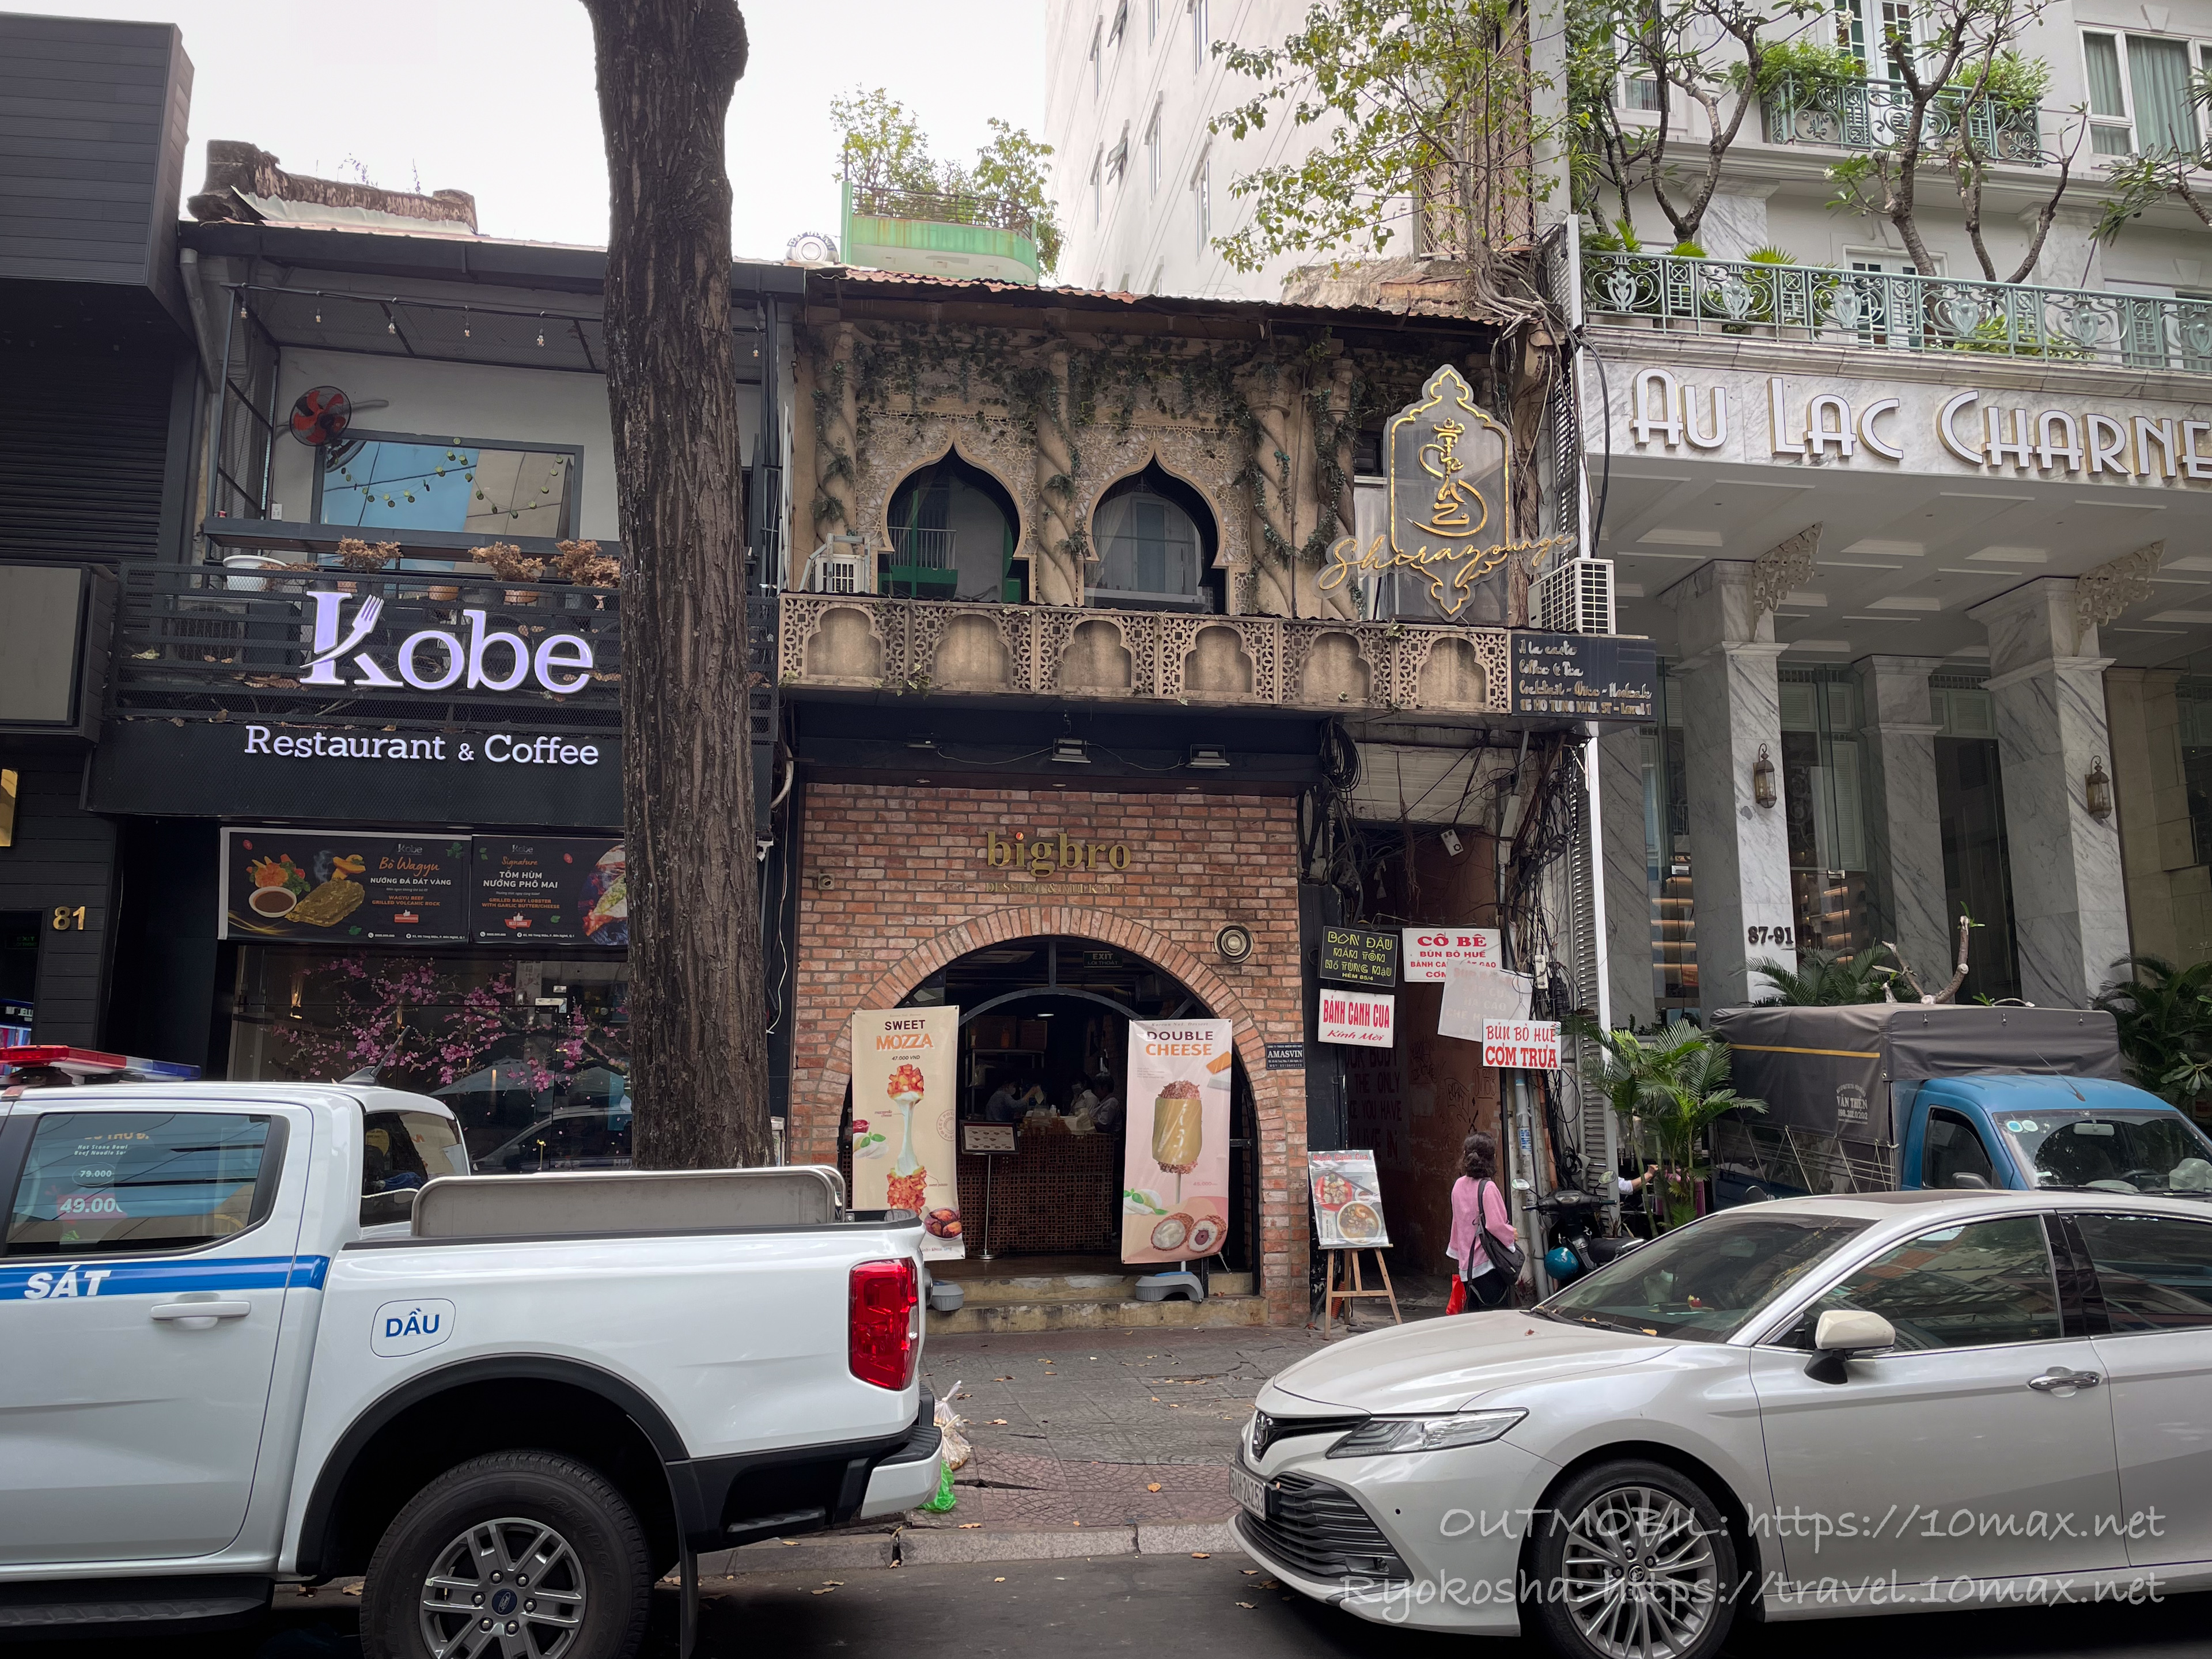 ホーチミン1区の蟹うどんの名店「Bánh Canh Cua」の入り口